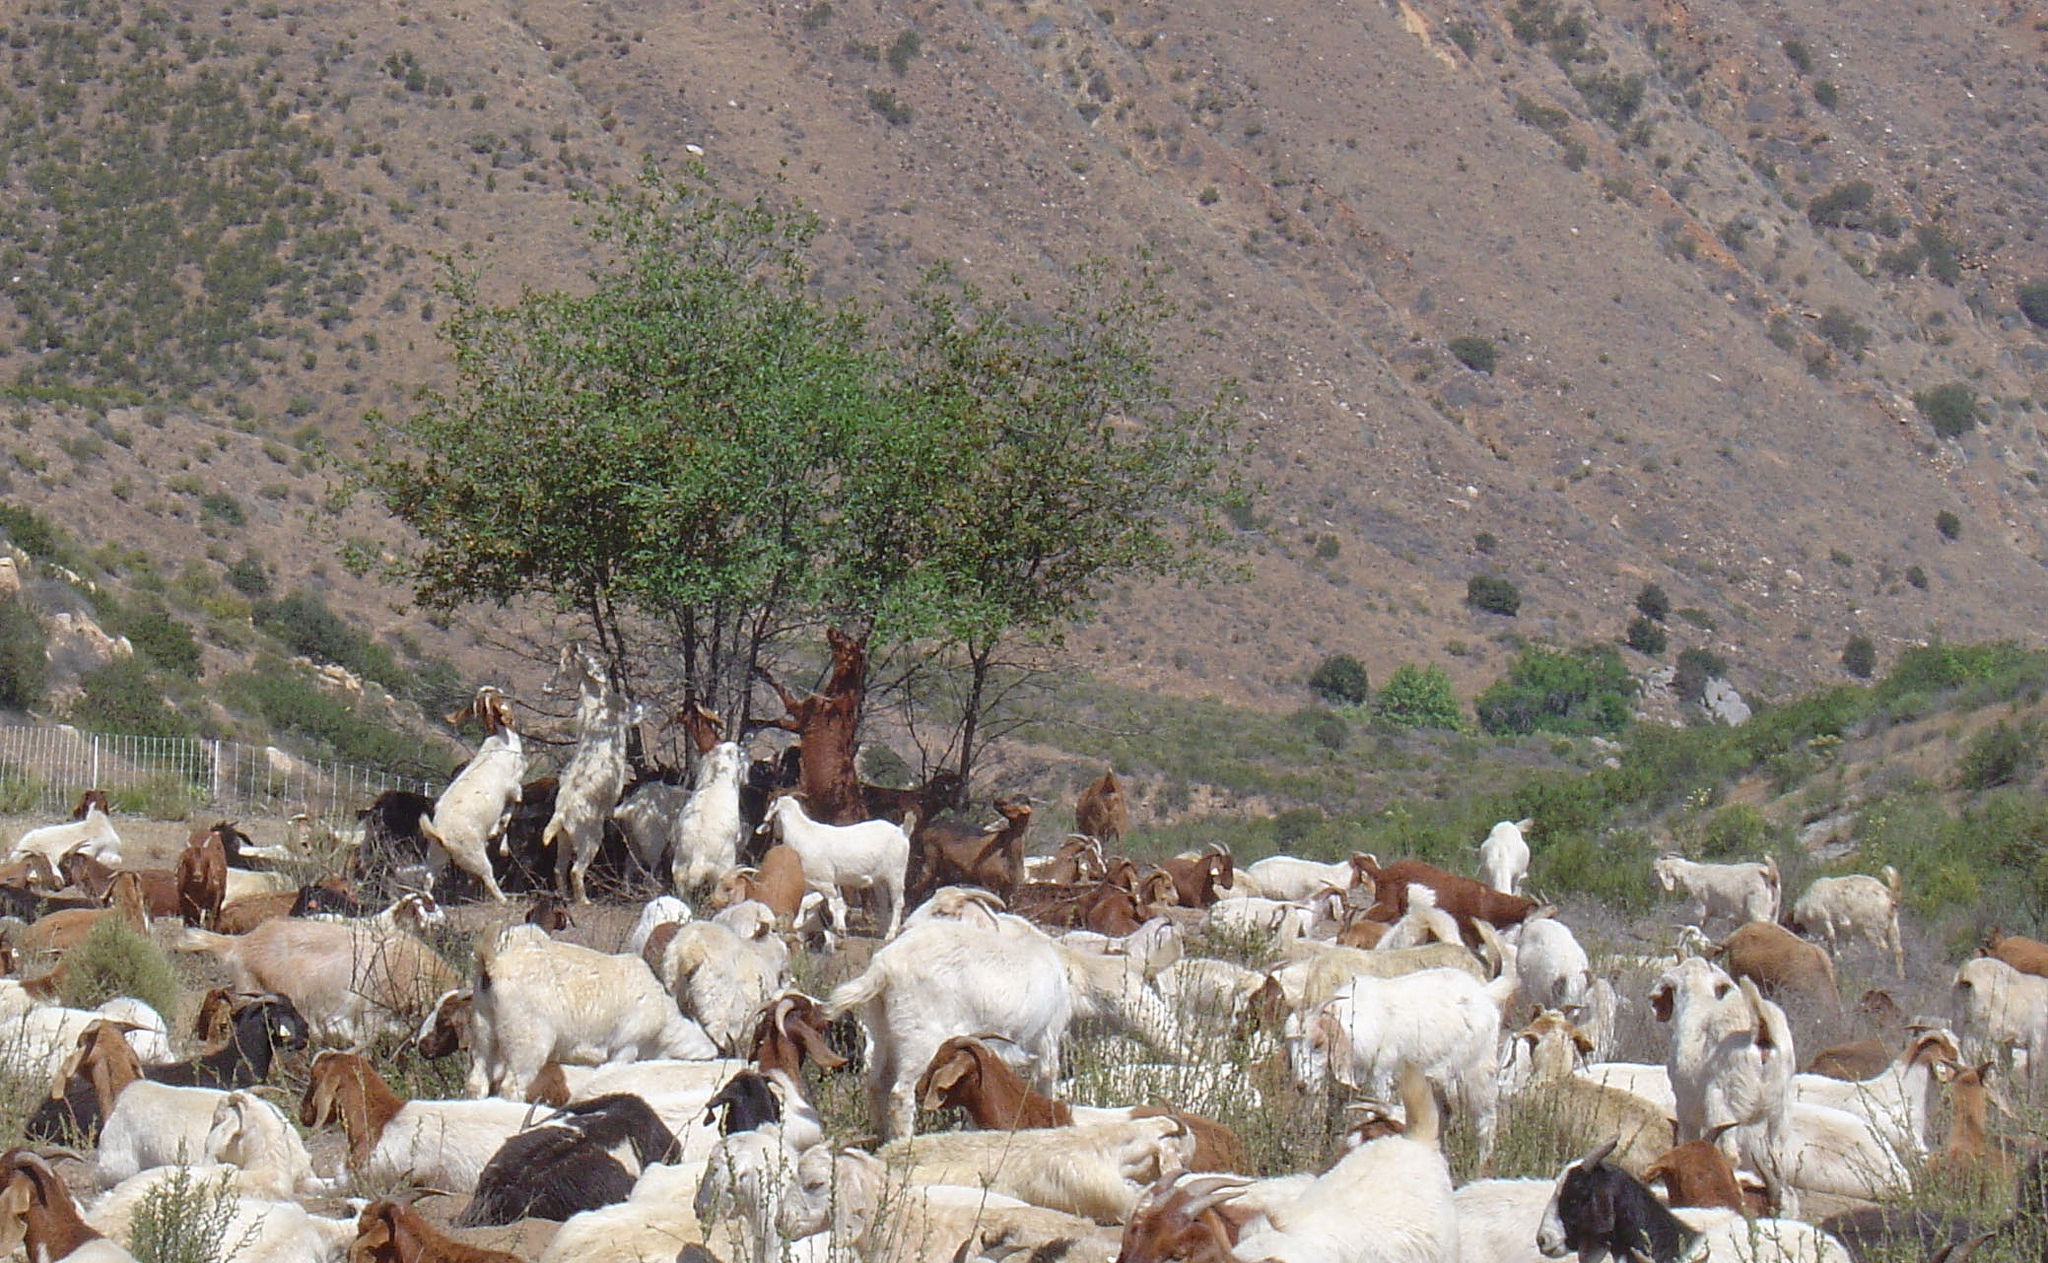 Goats vegetation